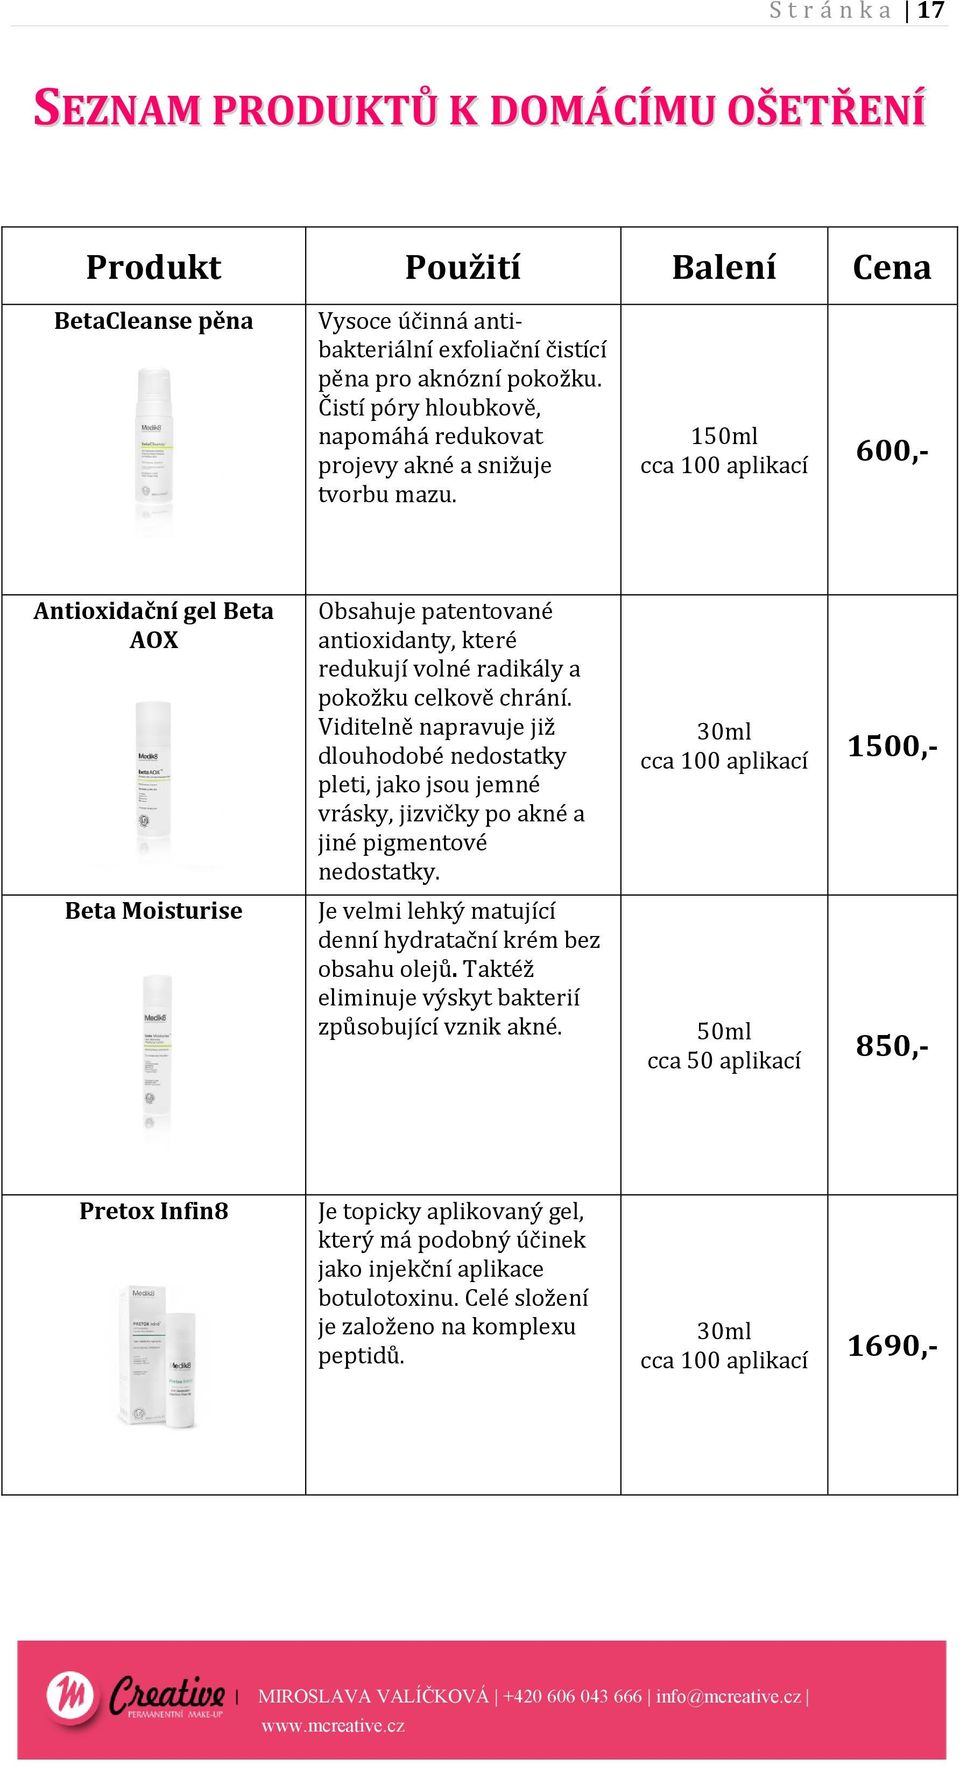 150ml cca 100 aplikací 600,- Antioxidační gel Beta AOX Beta Moisturise Obsahuje patentované antioxidanty, které redukují volné radikály a pokožku celkově chrání.